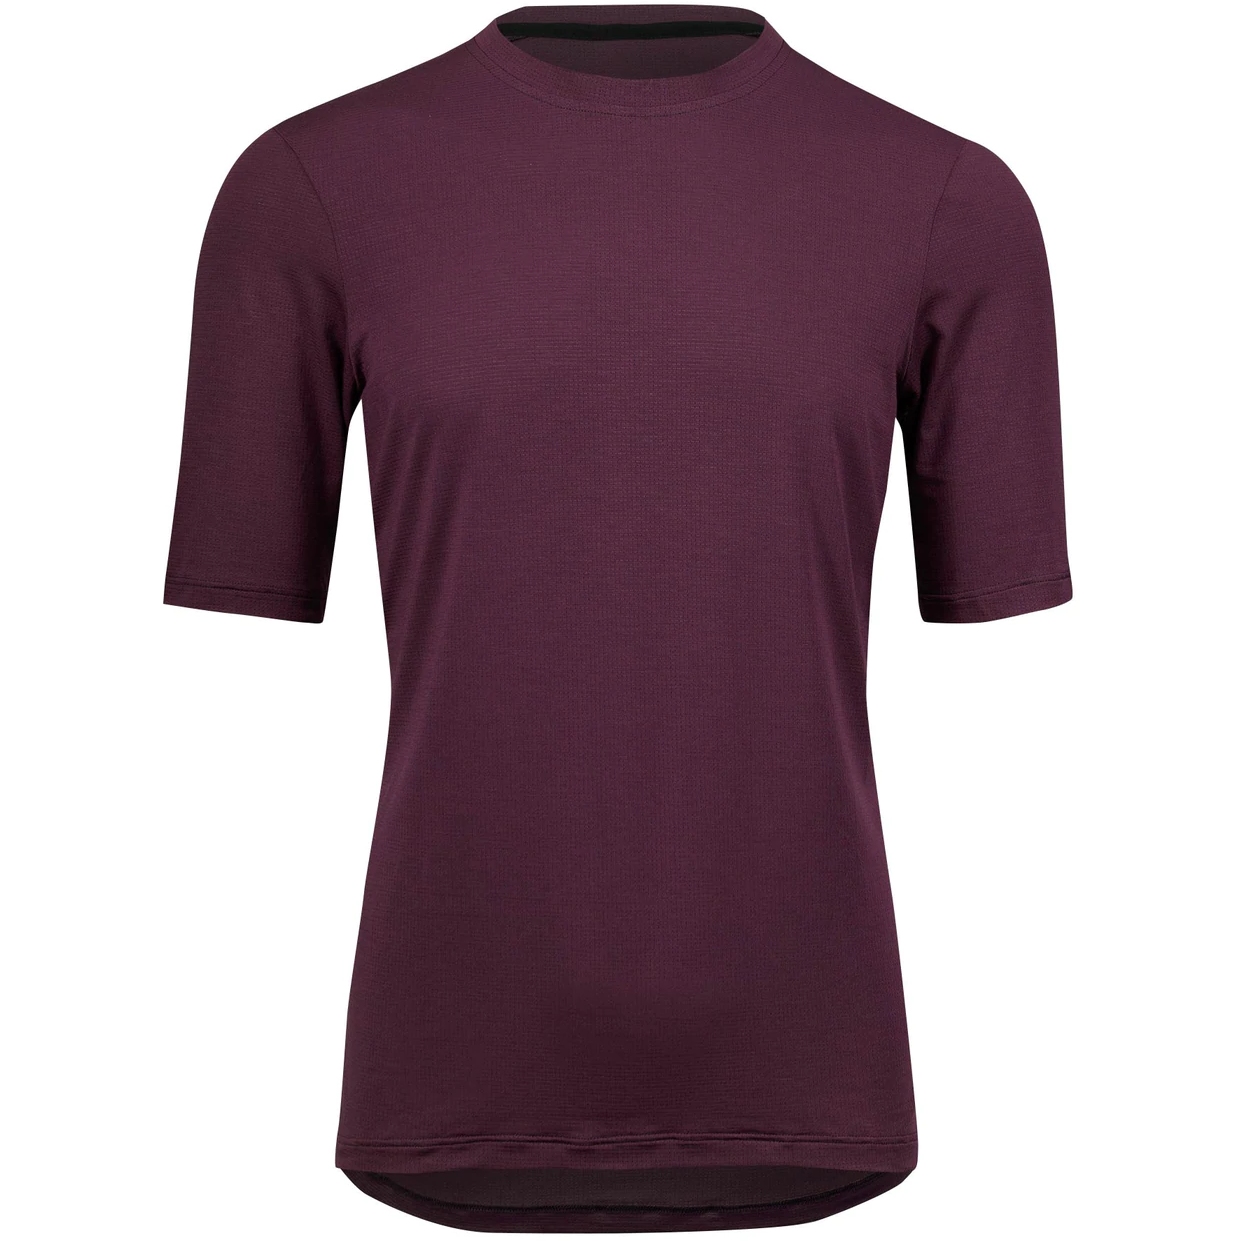 Produktbild von Velocio Micromodal Trail Herren T-Shirt - Black Cherry